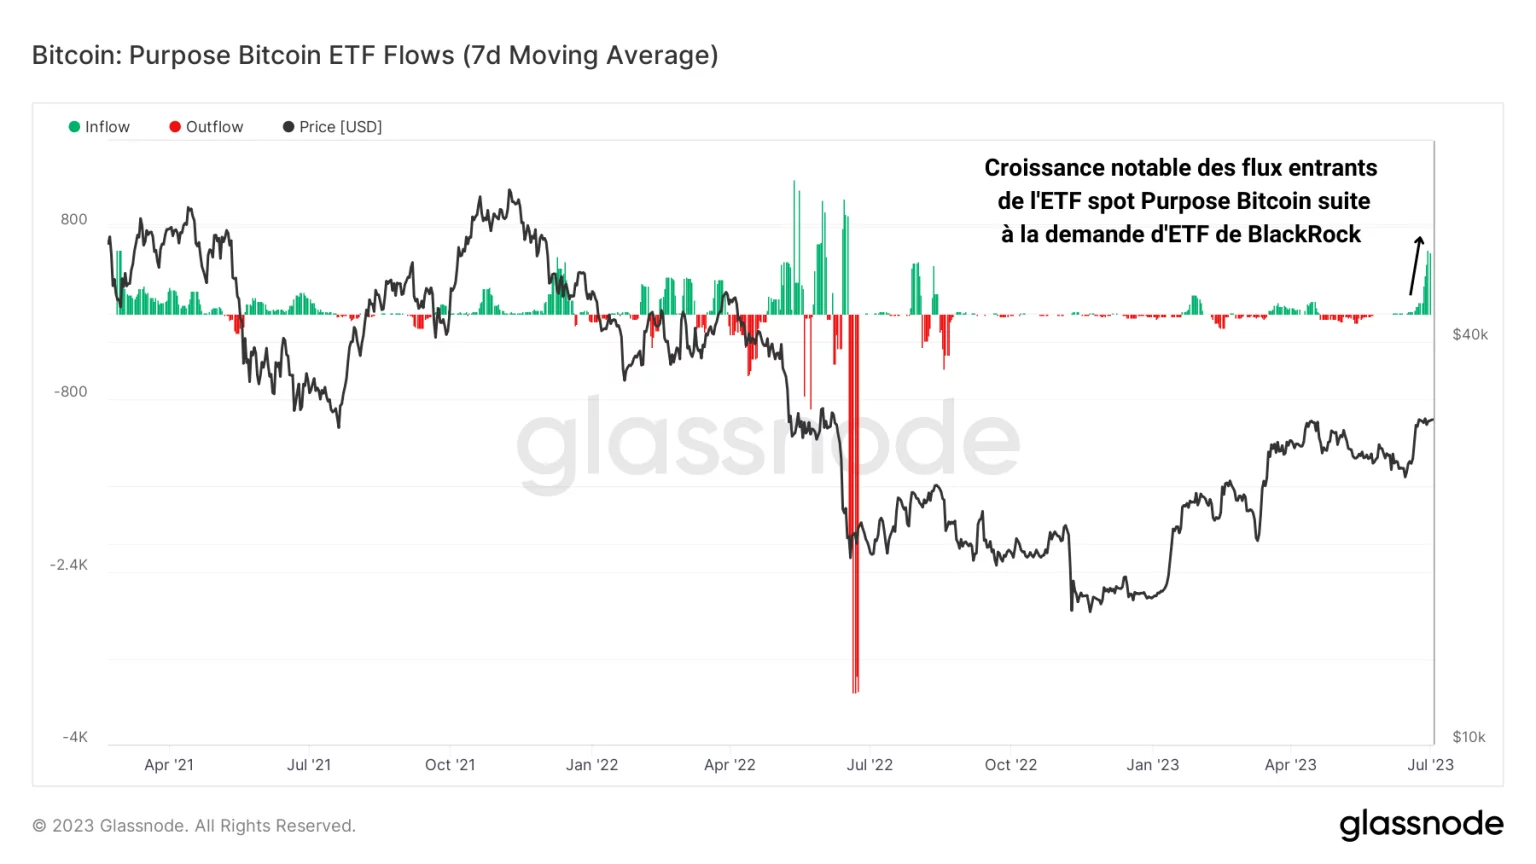 Figura 2: Flujos netos de reservas de BTC de Purpose Bitcoin Spot ETF